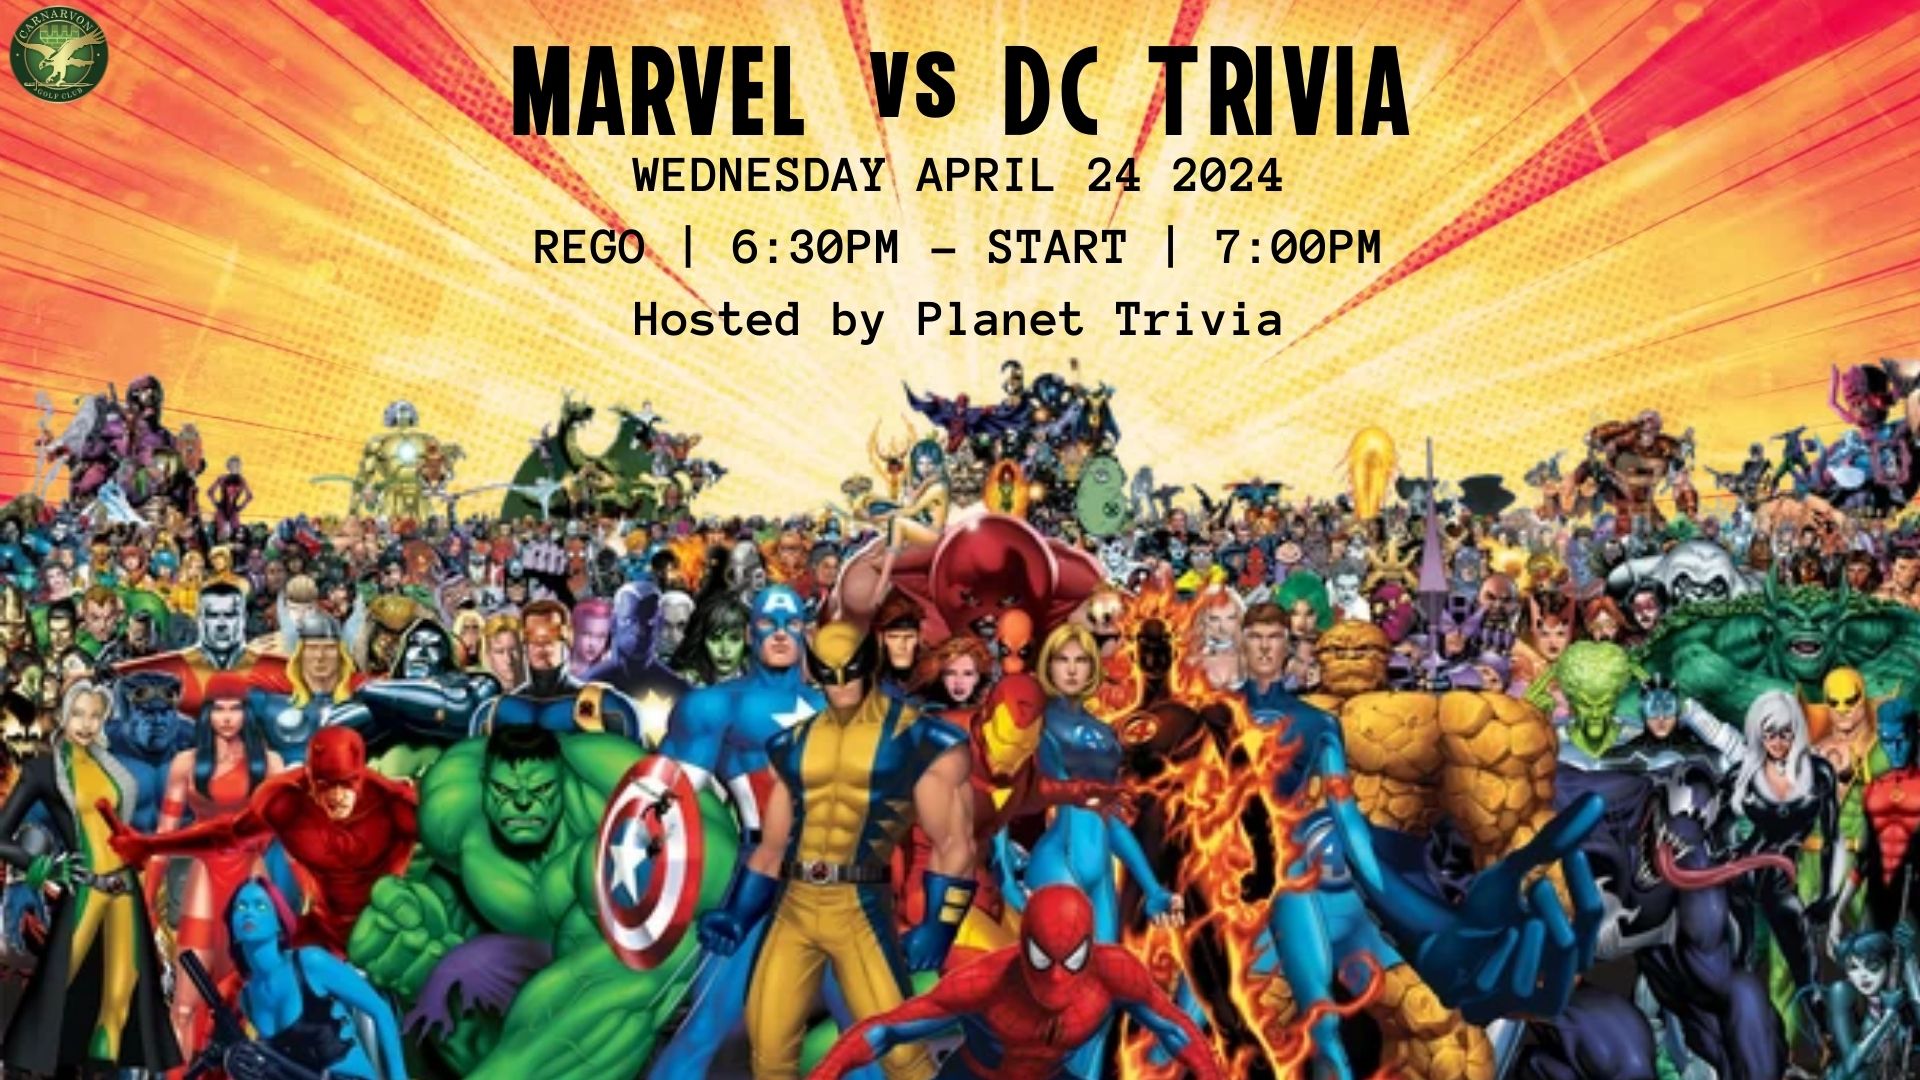 Marvel vs DC Trivia